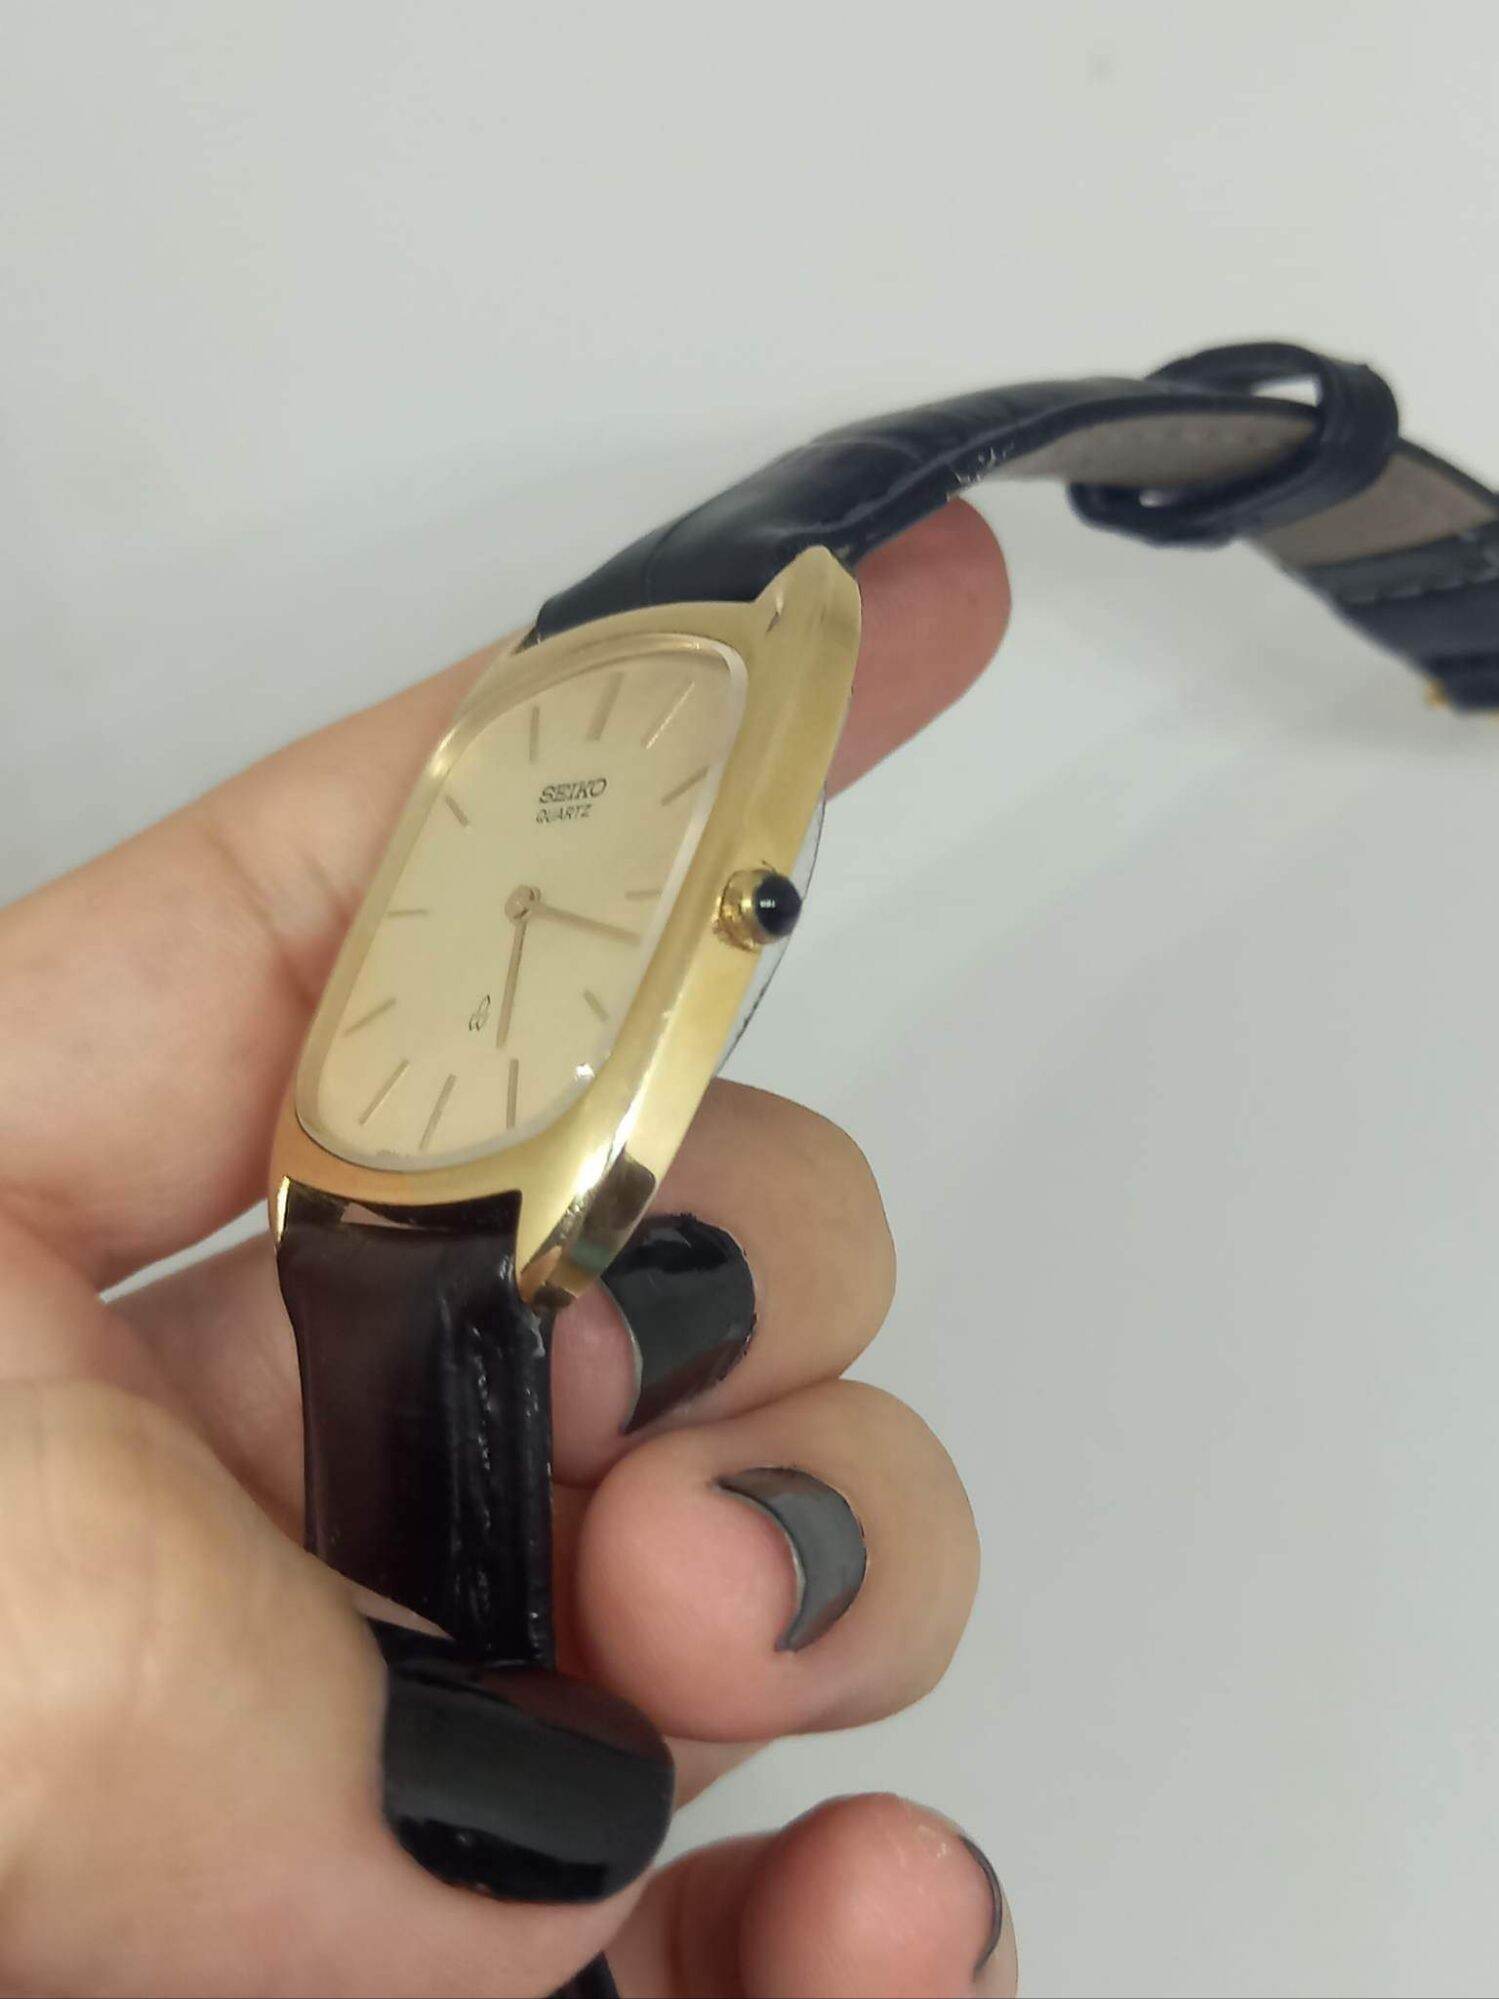 HCM Đồng Hồ Seiko Pin Vàng Đúc 14k Chính Hãng Full Hộp - Size 28mm x 29mm -  MixASale